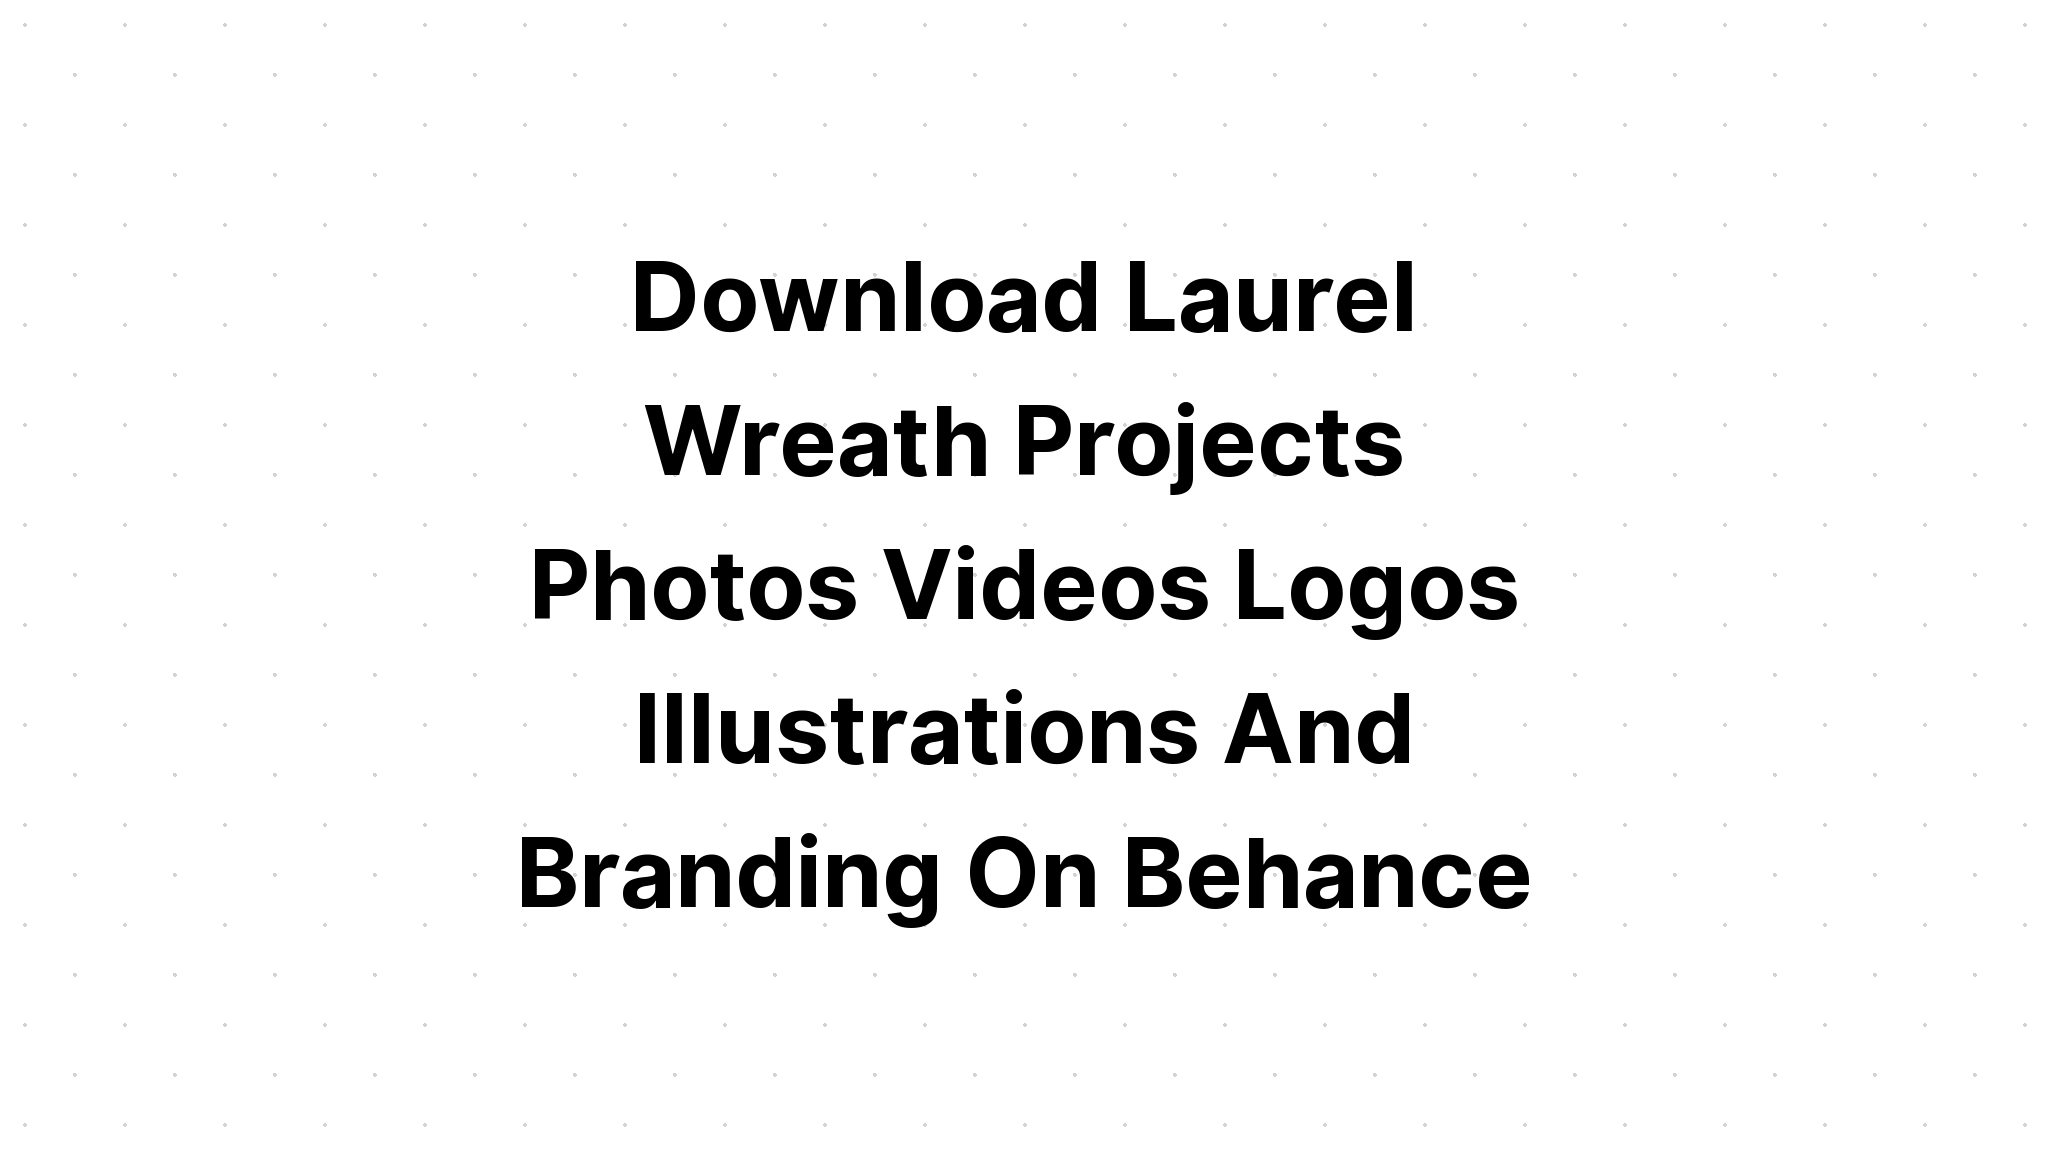 Download Heart Laurel Doodle Wreath SVG File